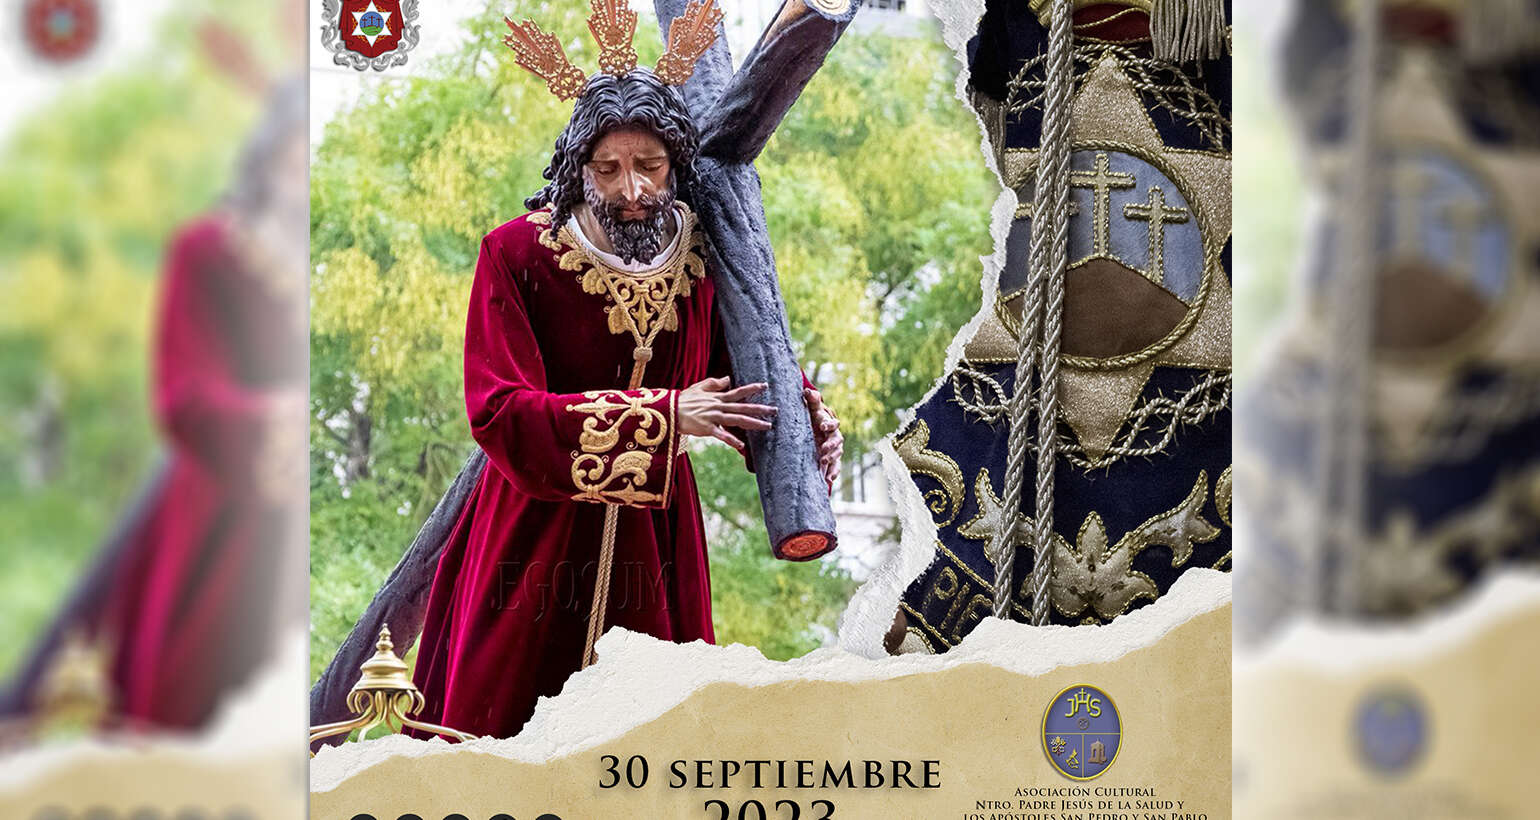 El 30 de septiembre pondremos nuestros sones tras la Salud de San Pablo, Sevilla